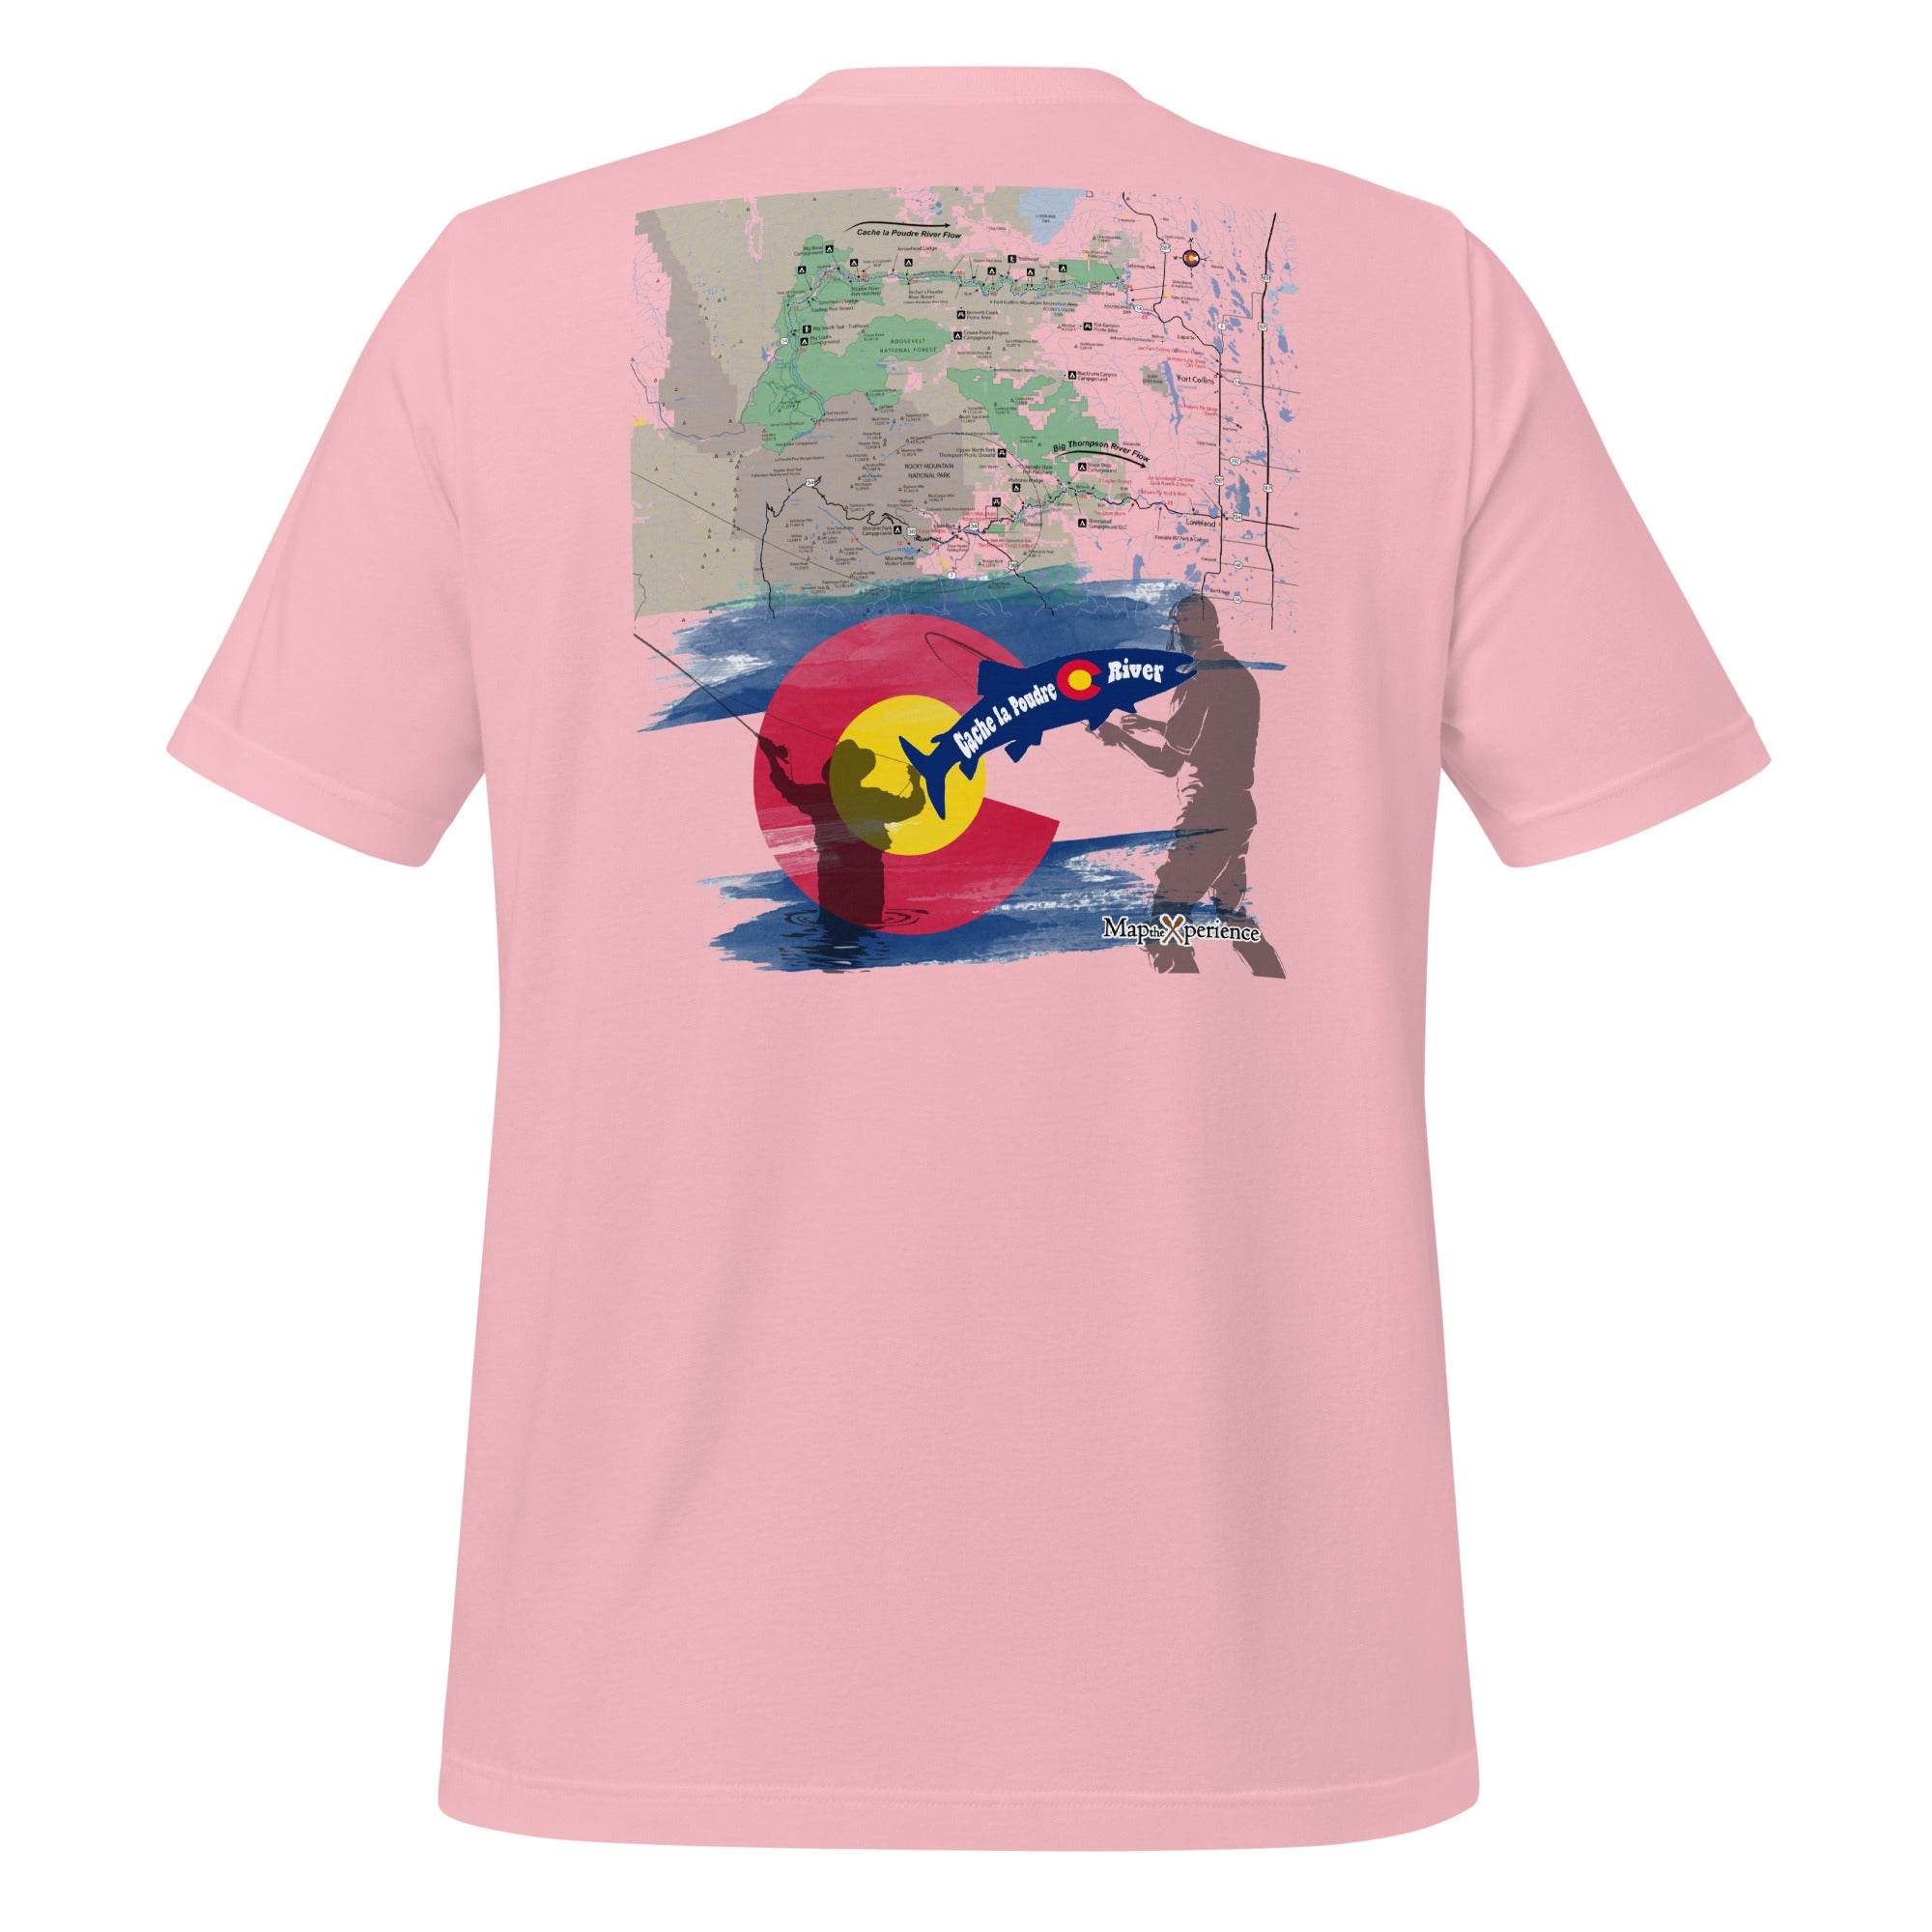 Cache la Poudre River, Colorado Performance t-shirt